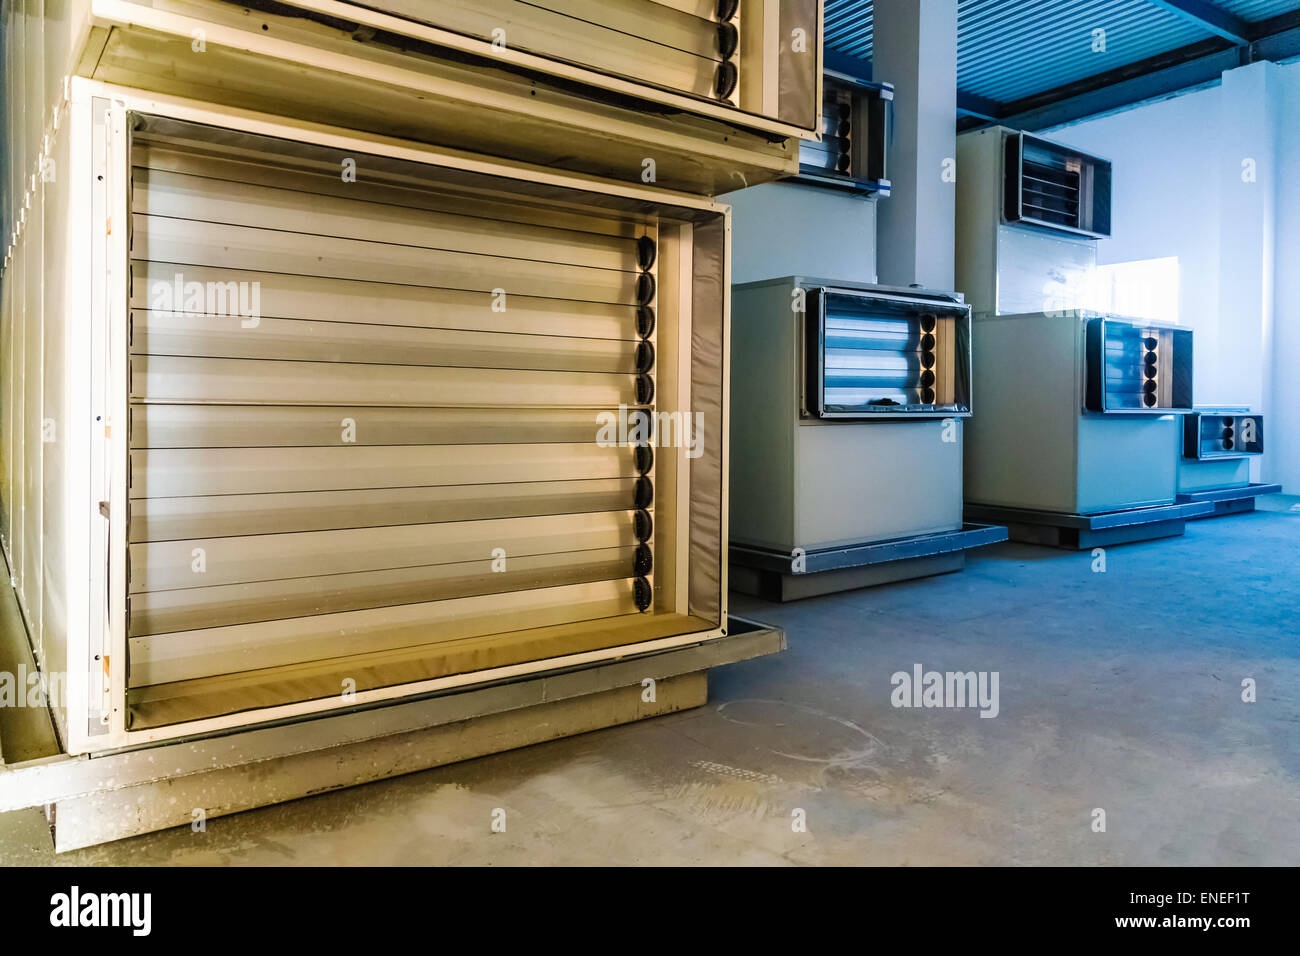 Aria condizionata sala interna con apparecchiature a industria farmaceutica fabbricazione o impianto chimico Foto Stock